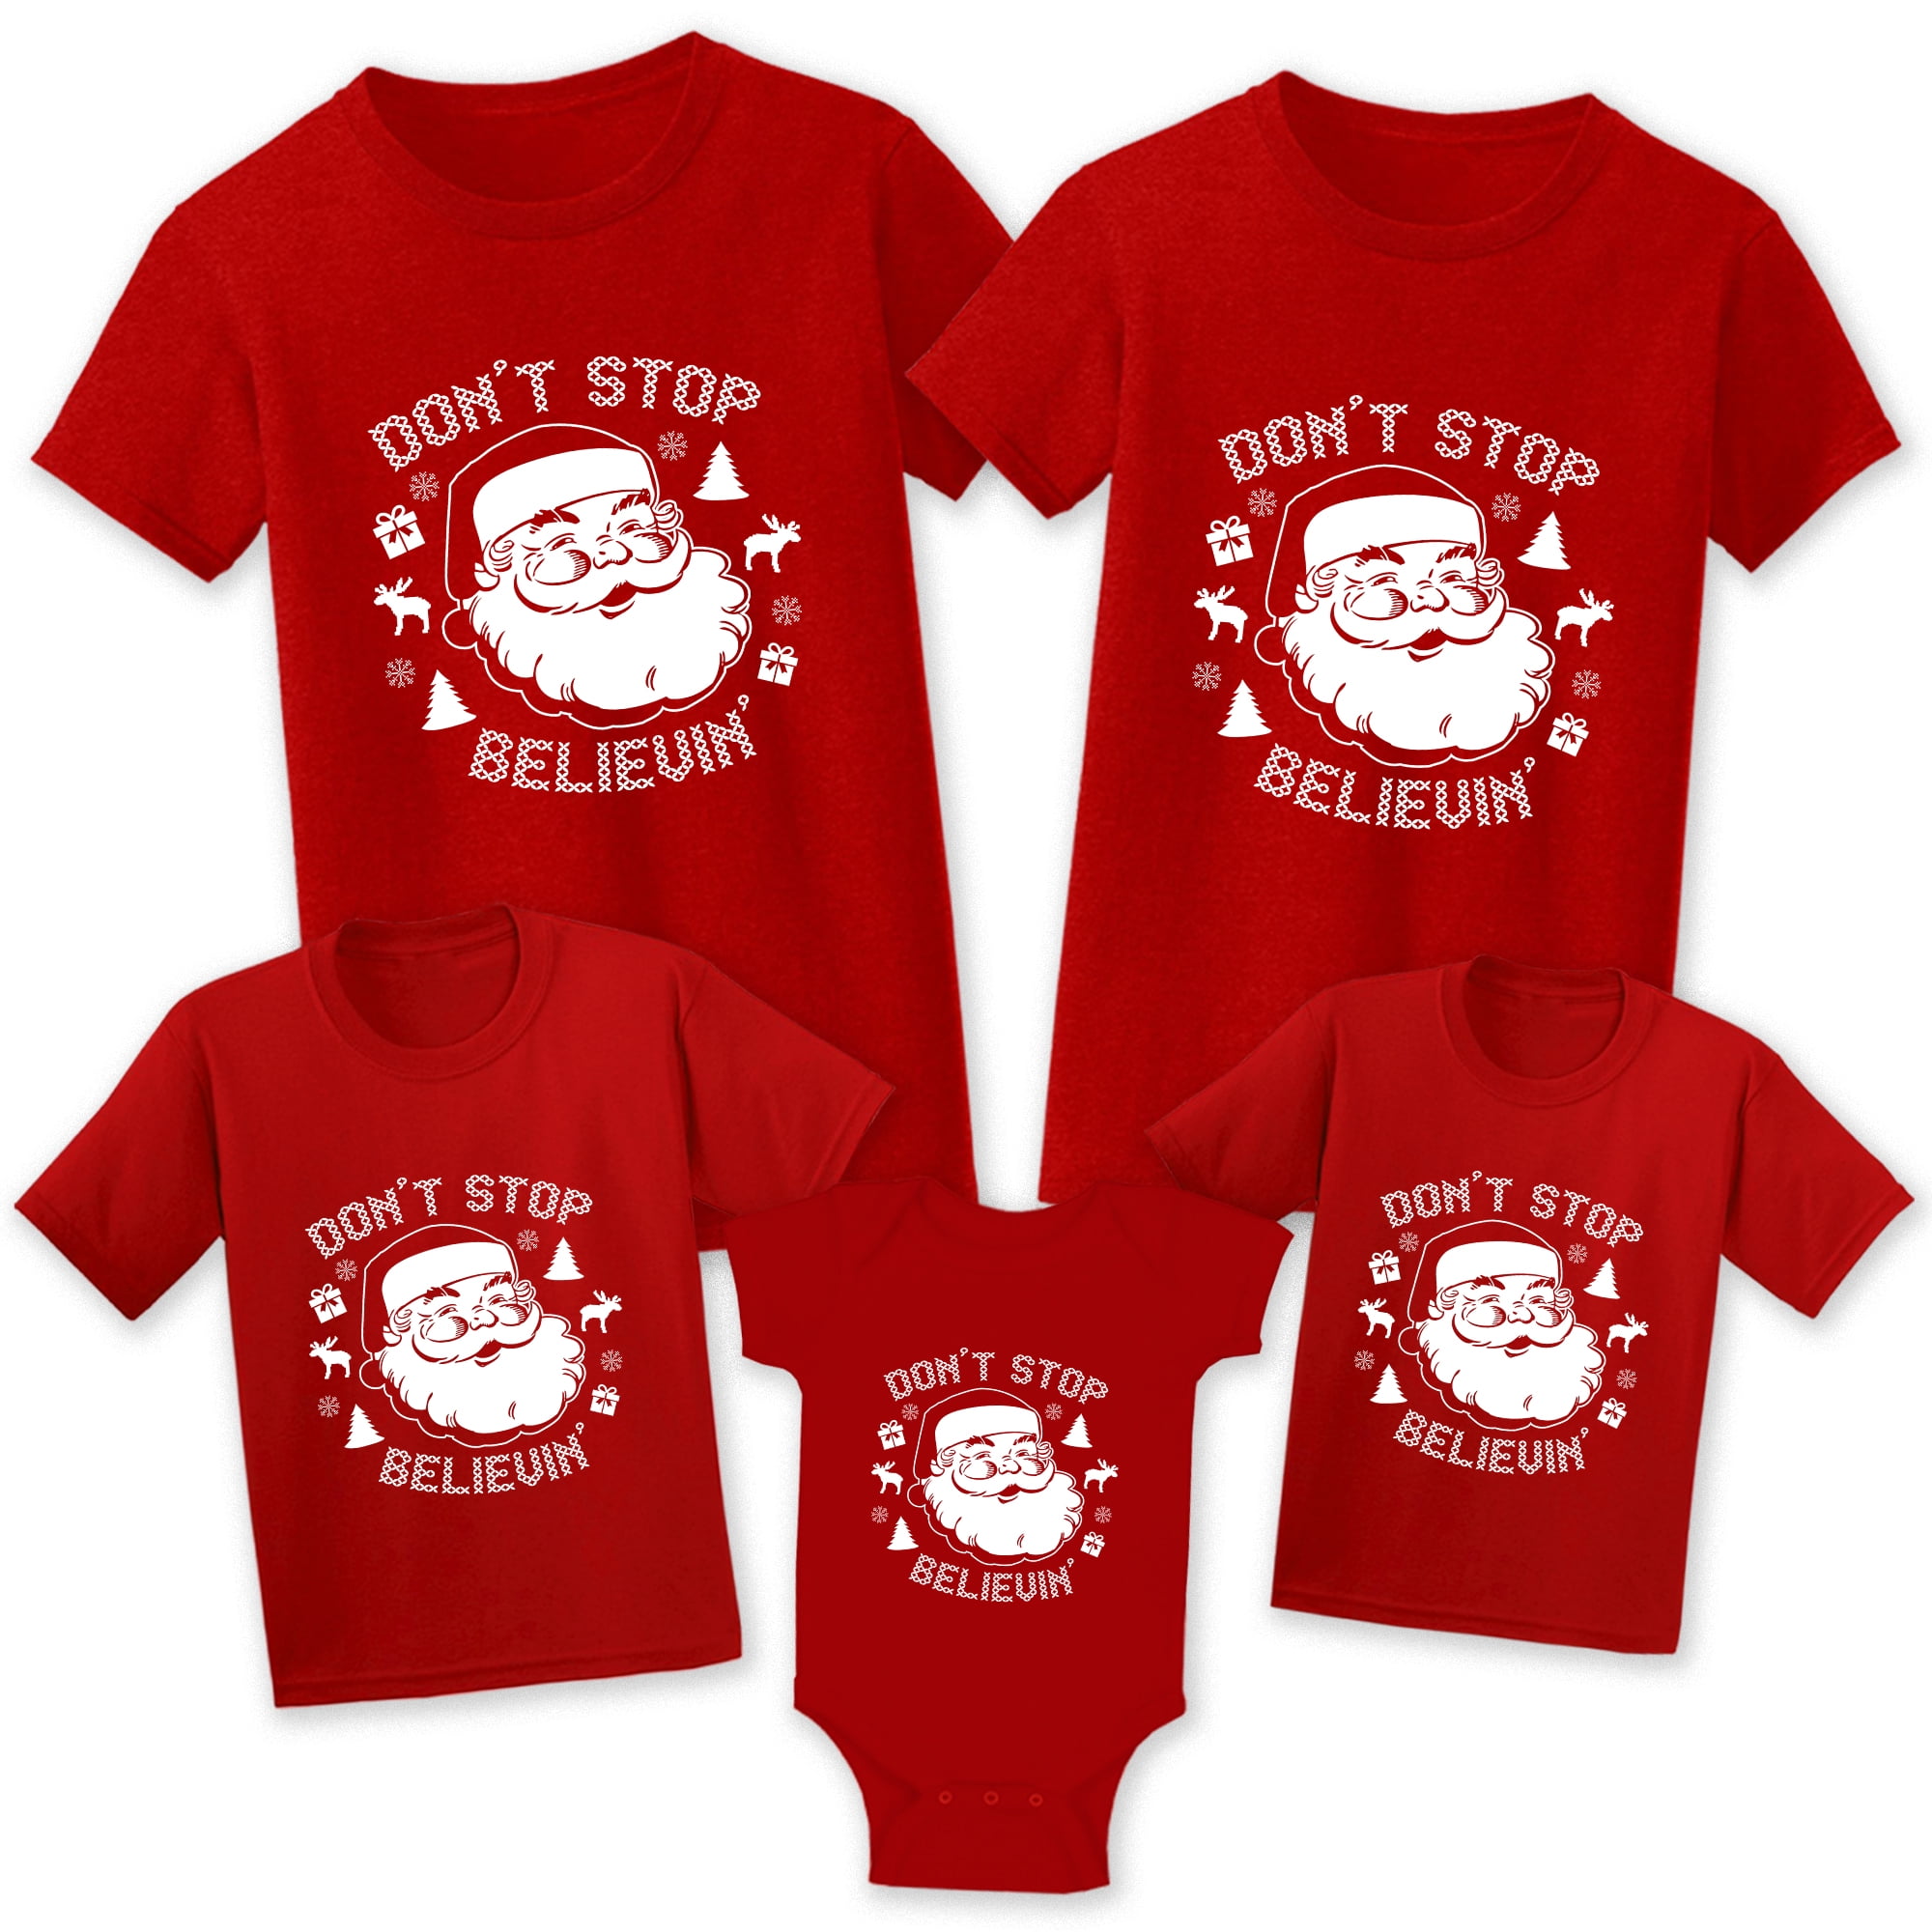 Christmas Shirts for Family - Funny Santa Christmas Tshirt for Matching ...